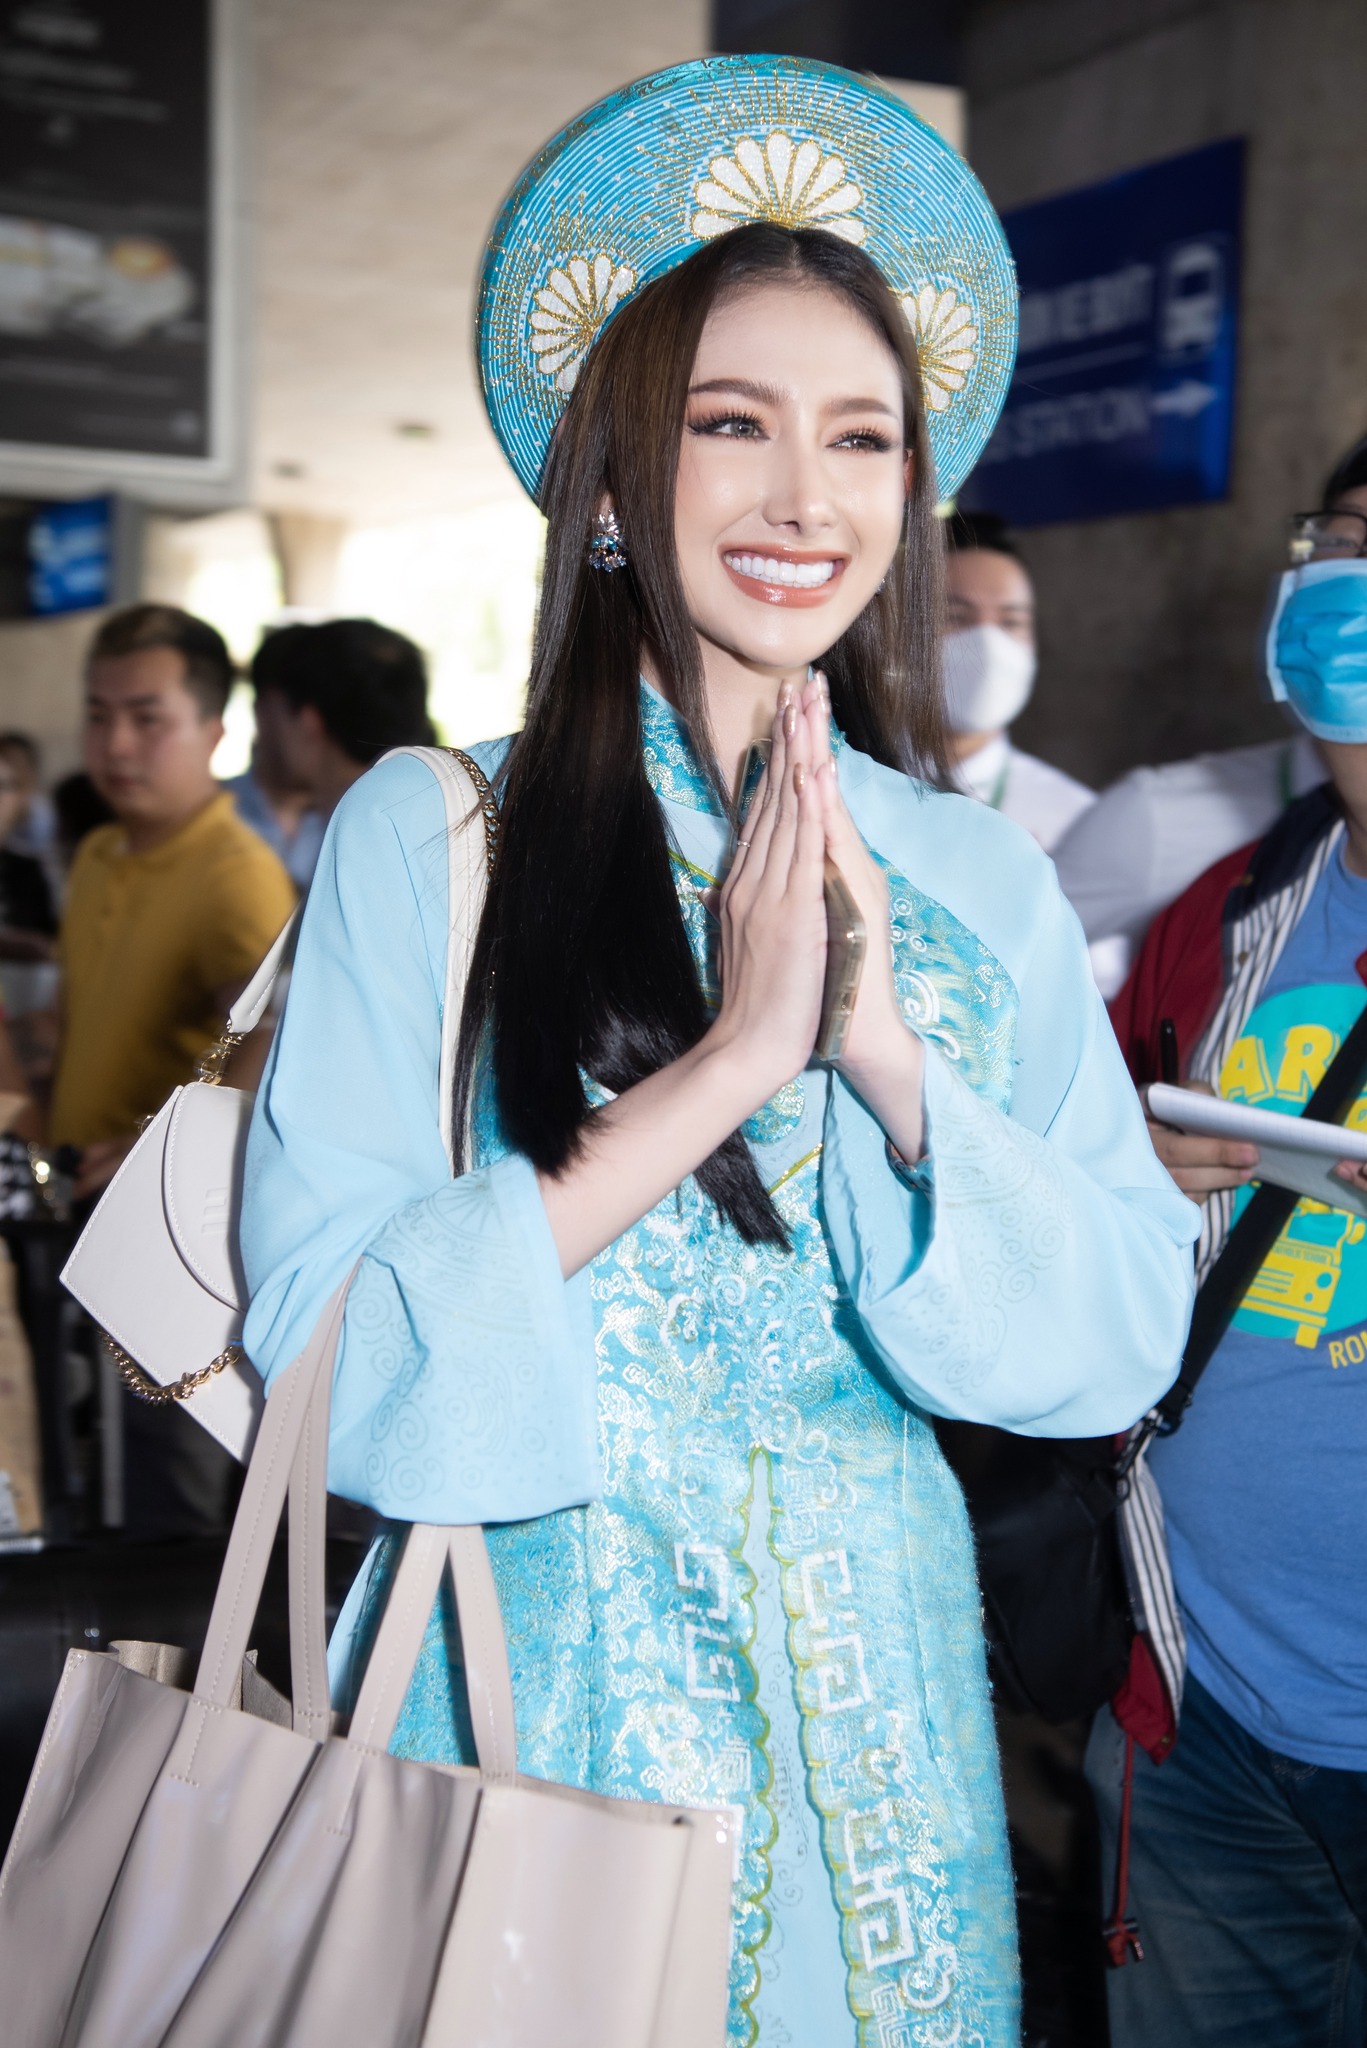 Dân mạng phàn nàn vì người đẹp Thái Lan diện áo dài xuyên thấu khi đến Việt Nam - ảnh 5